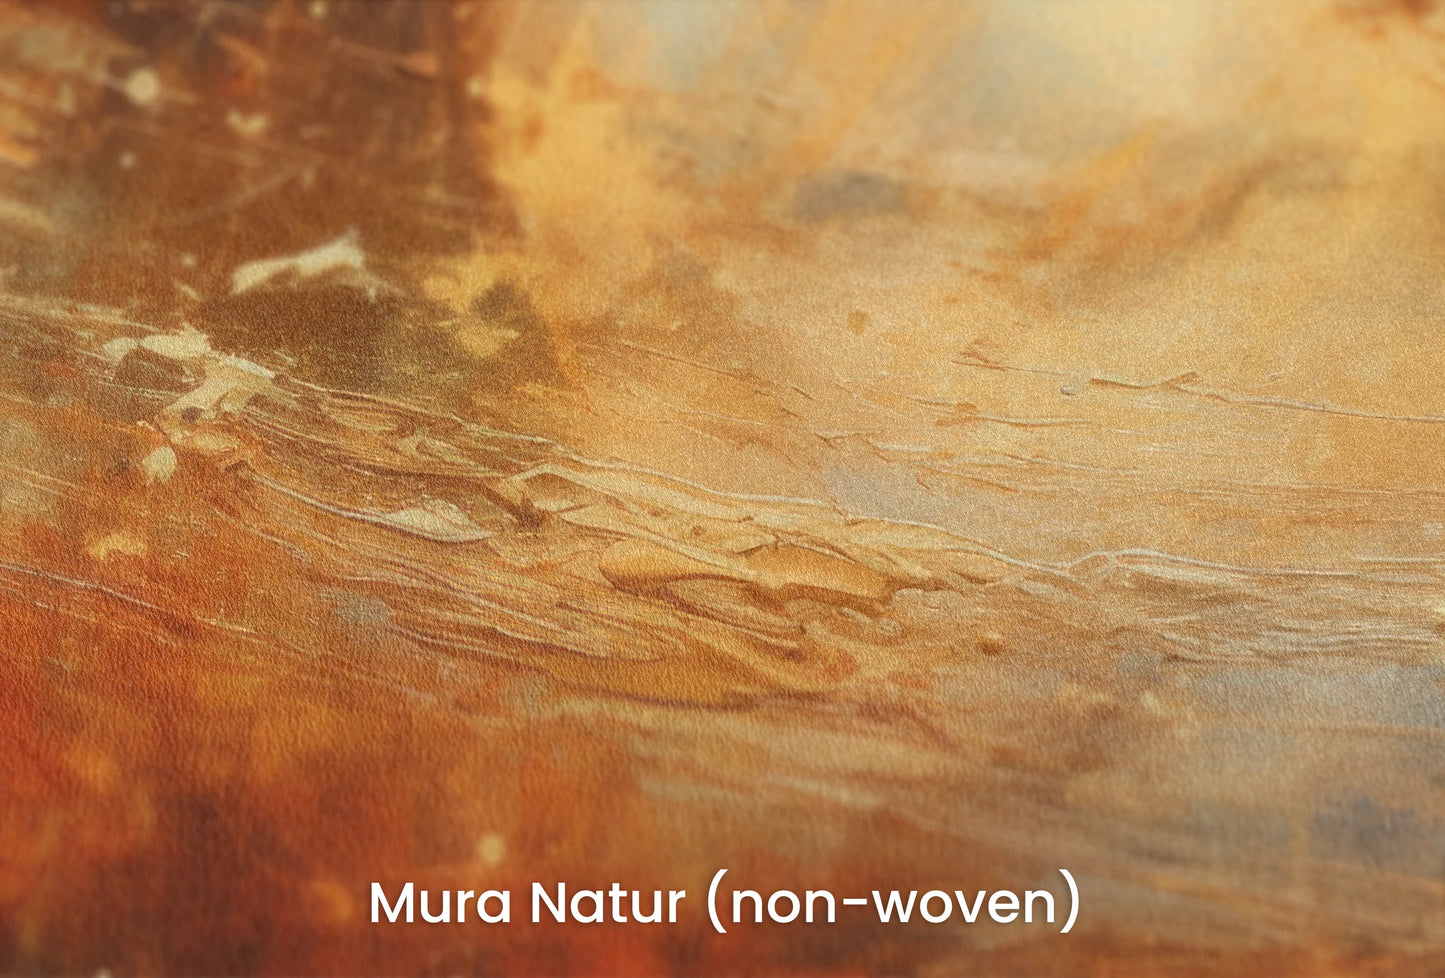 Zbliżenie na artystyczną fototapetę o nazwie Saturn's Embrace na podłożu Mura Natur (non-woven) - naturalne i ekologiczne podłoże.